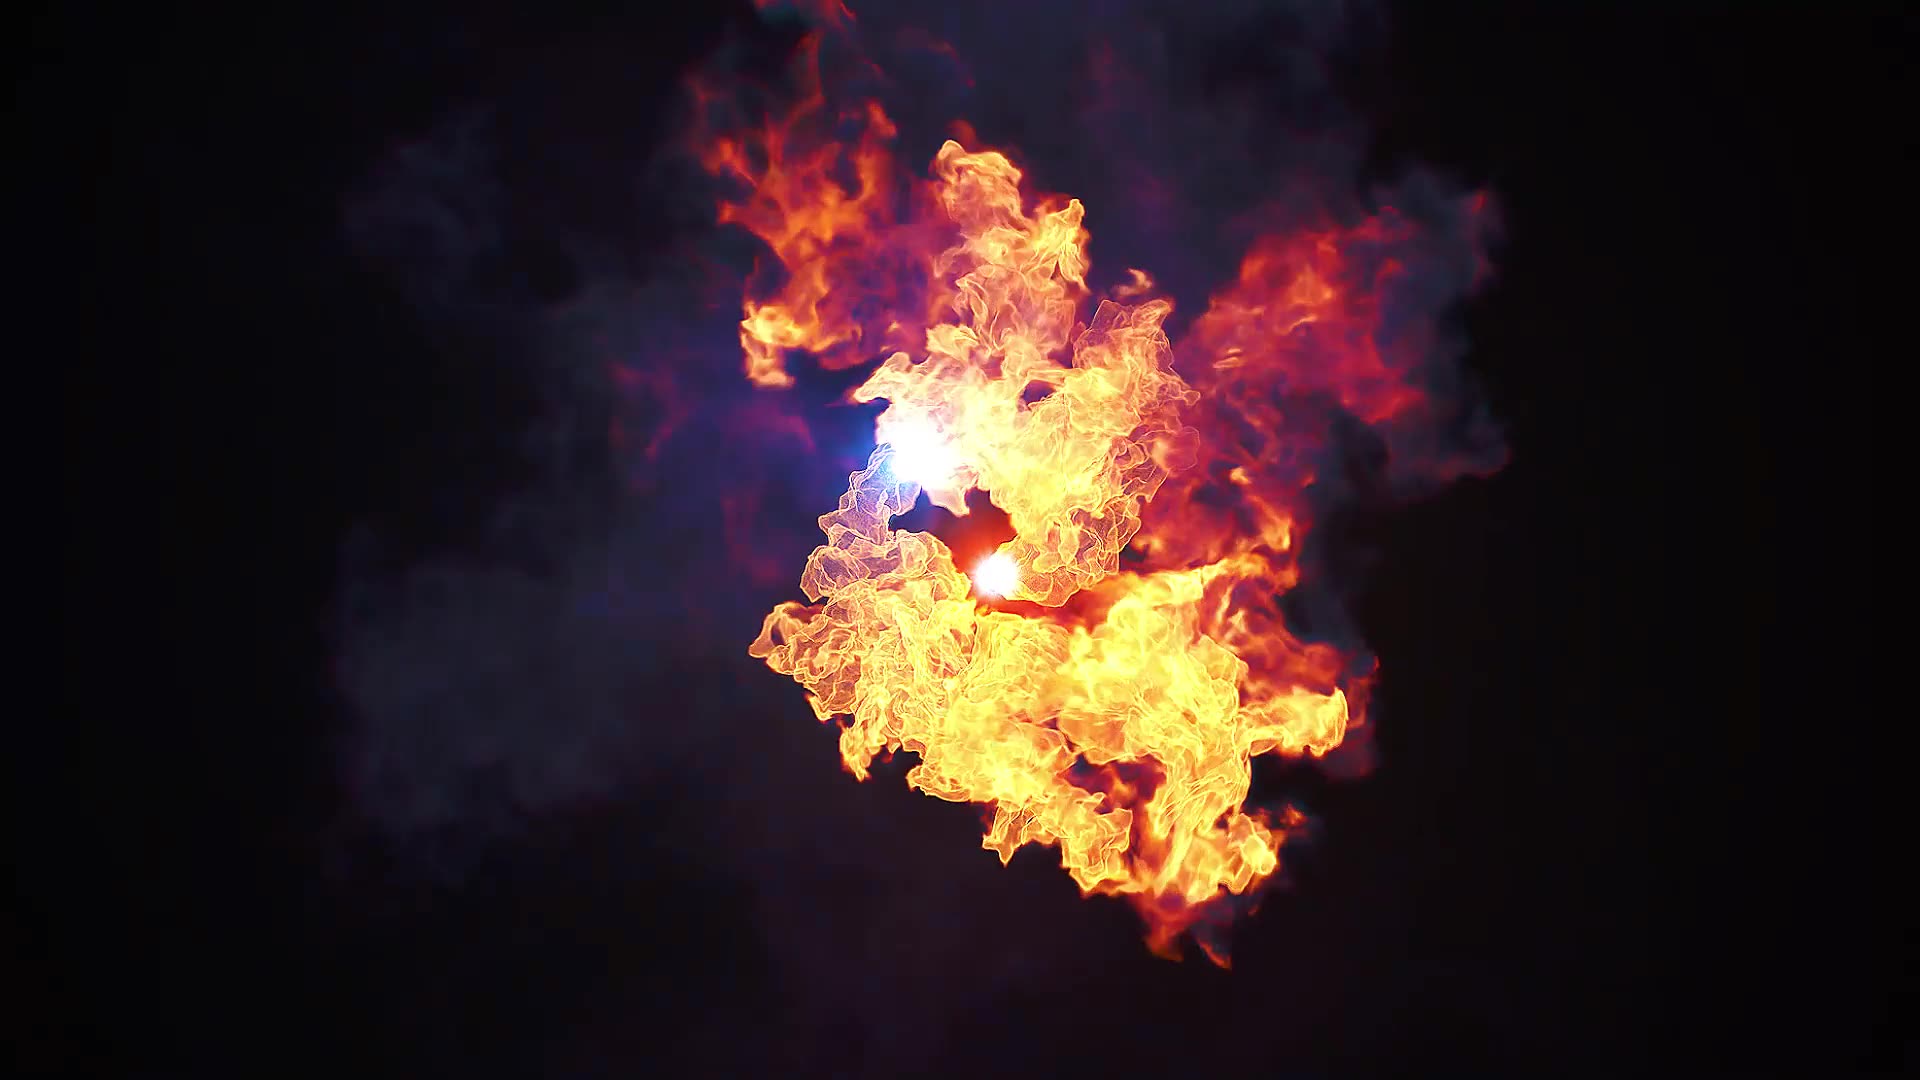 Fire Explosion Logo Reveal II Premire Pro Videohive 37550592 Premiere Pro Image 2